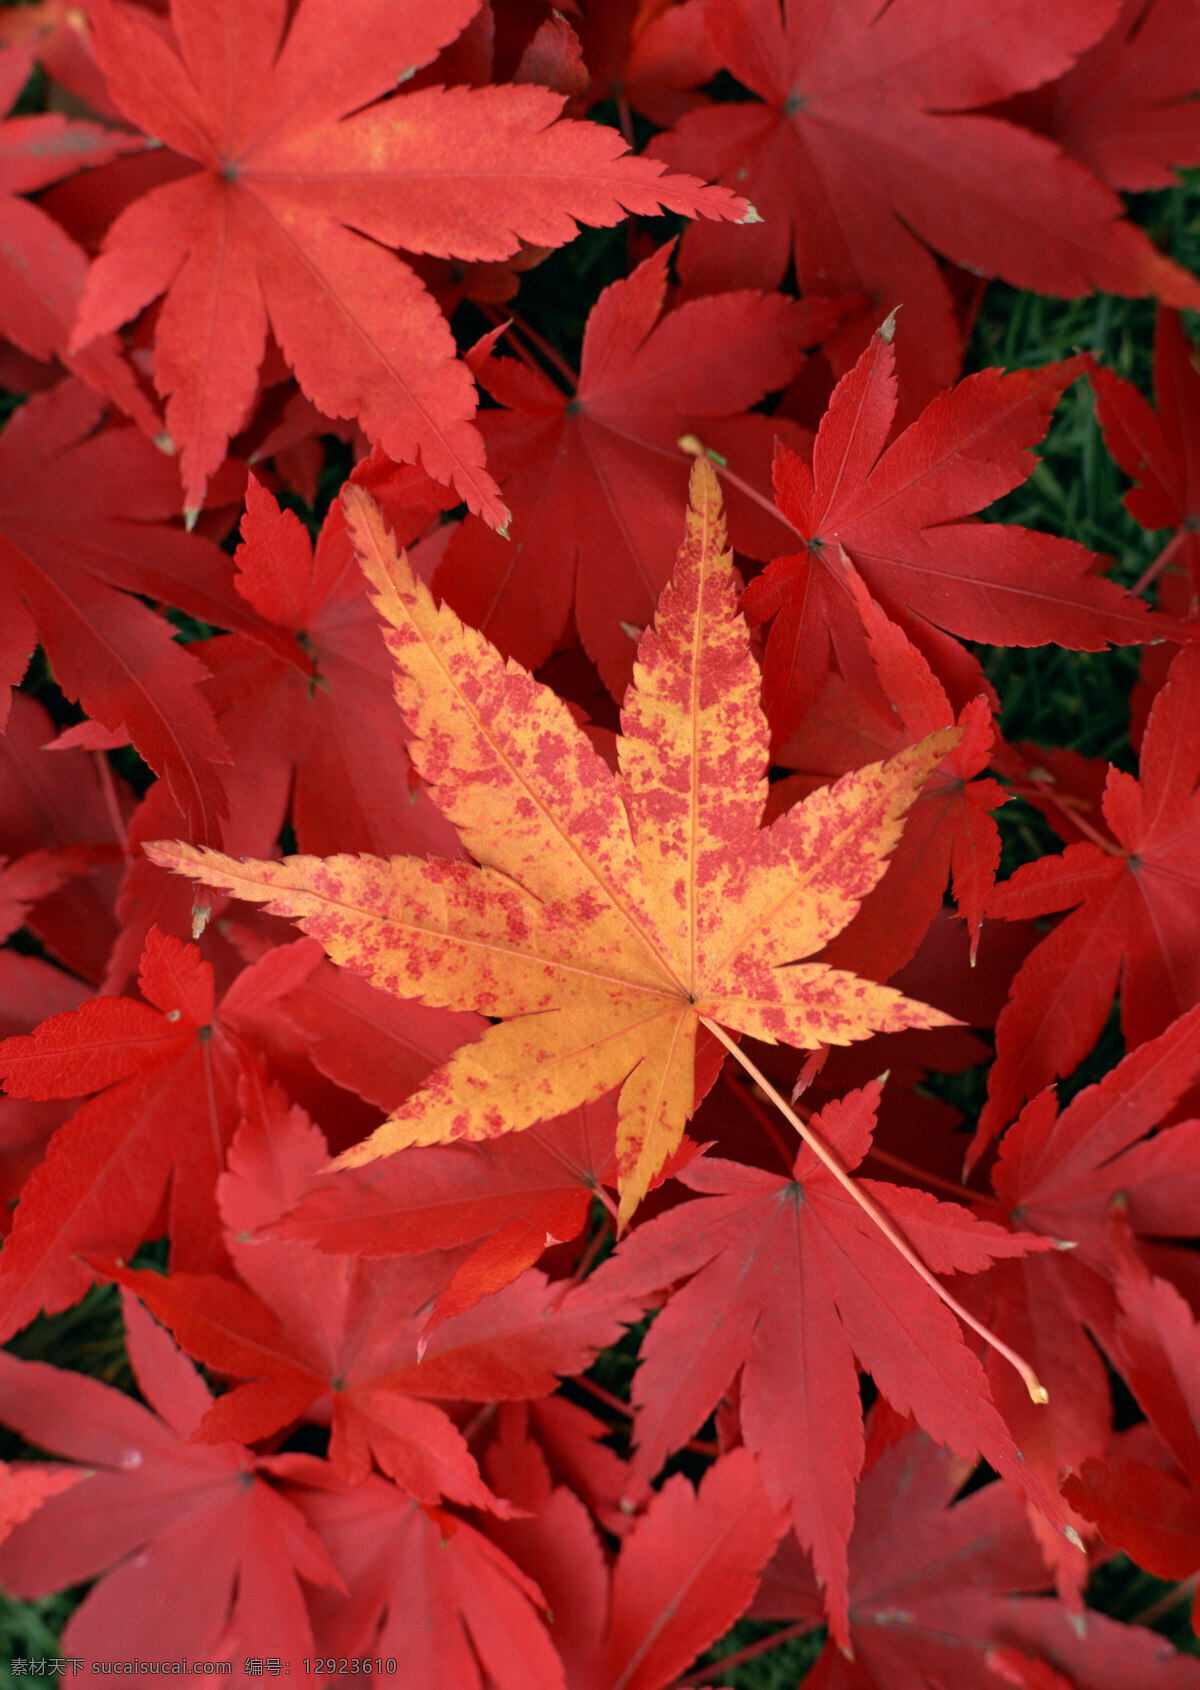 满地红叶 红叶 红叶满地 枫叶 风景 树叶 叶片 叶子 植物 秋天 秋季 秋景 伤感 凋零 花草植物树木 生物世界 树木树叶